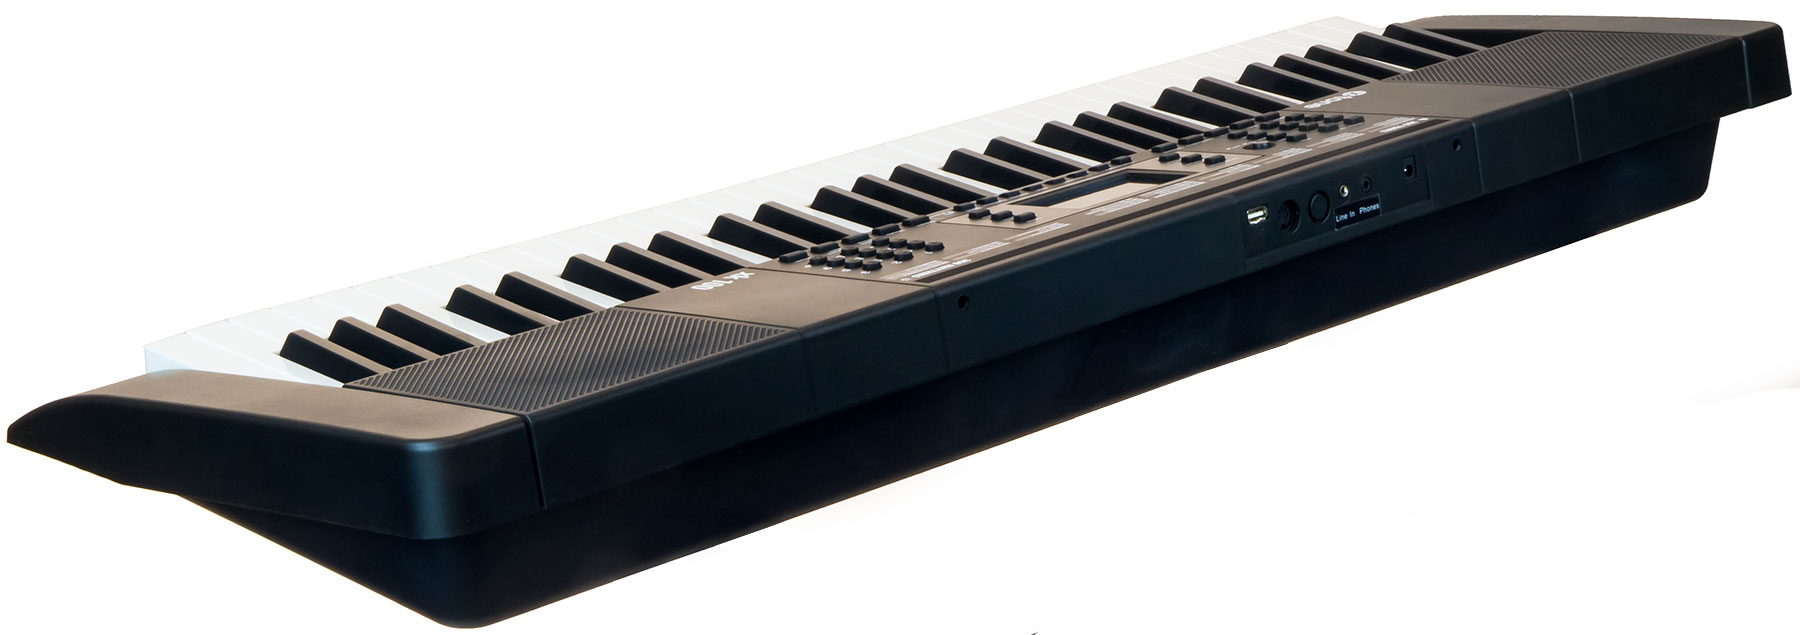 X-tone Xk100 Clavier Arrangeur - Entertainerkeyboard - Variation 2